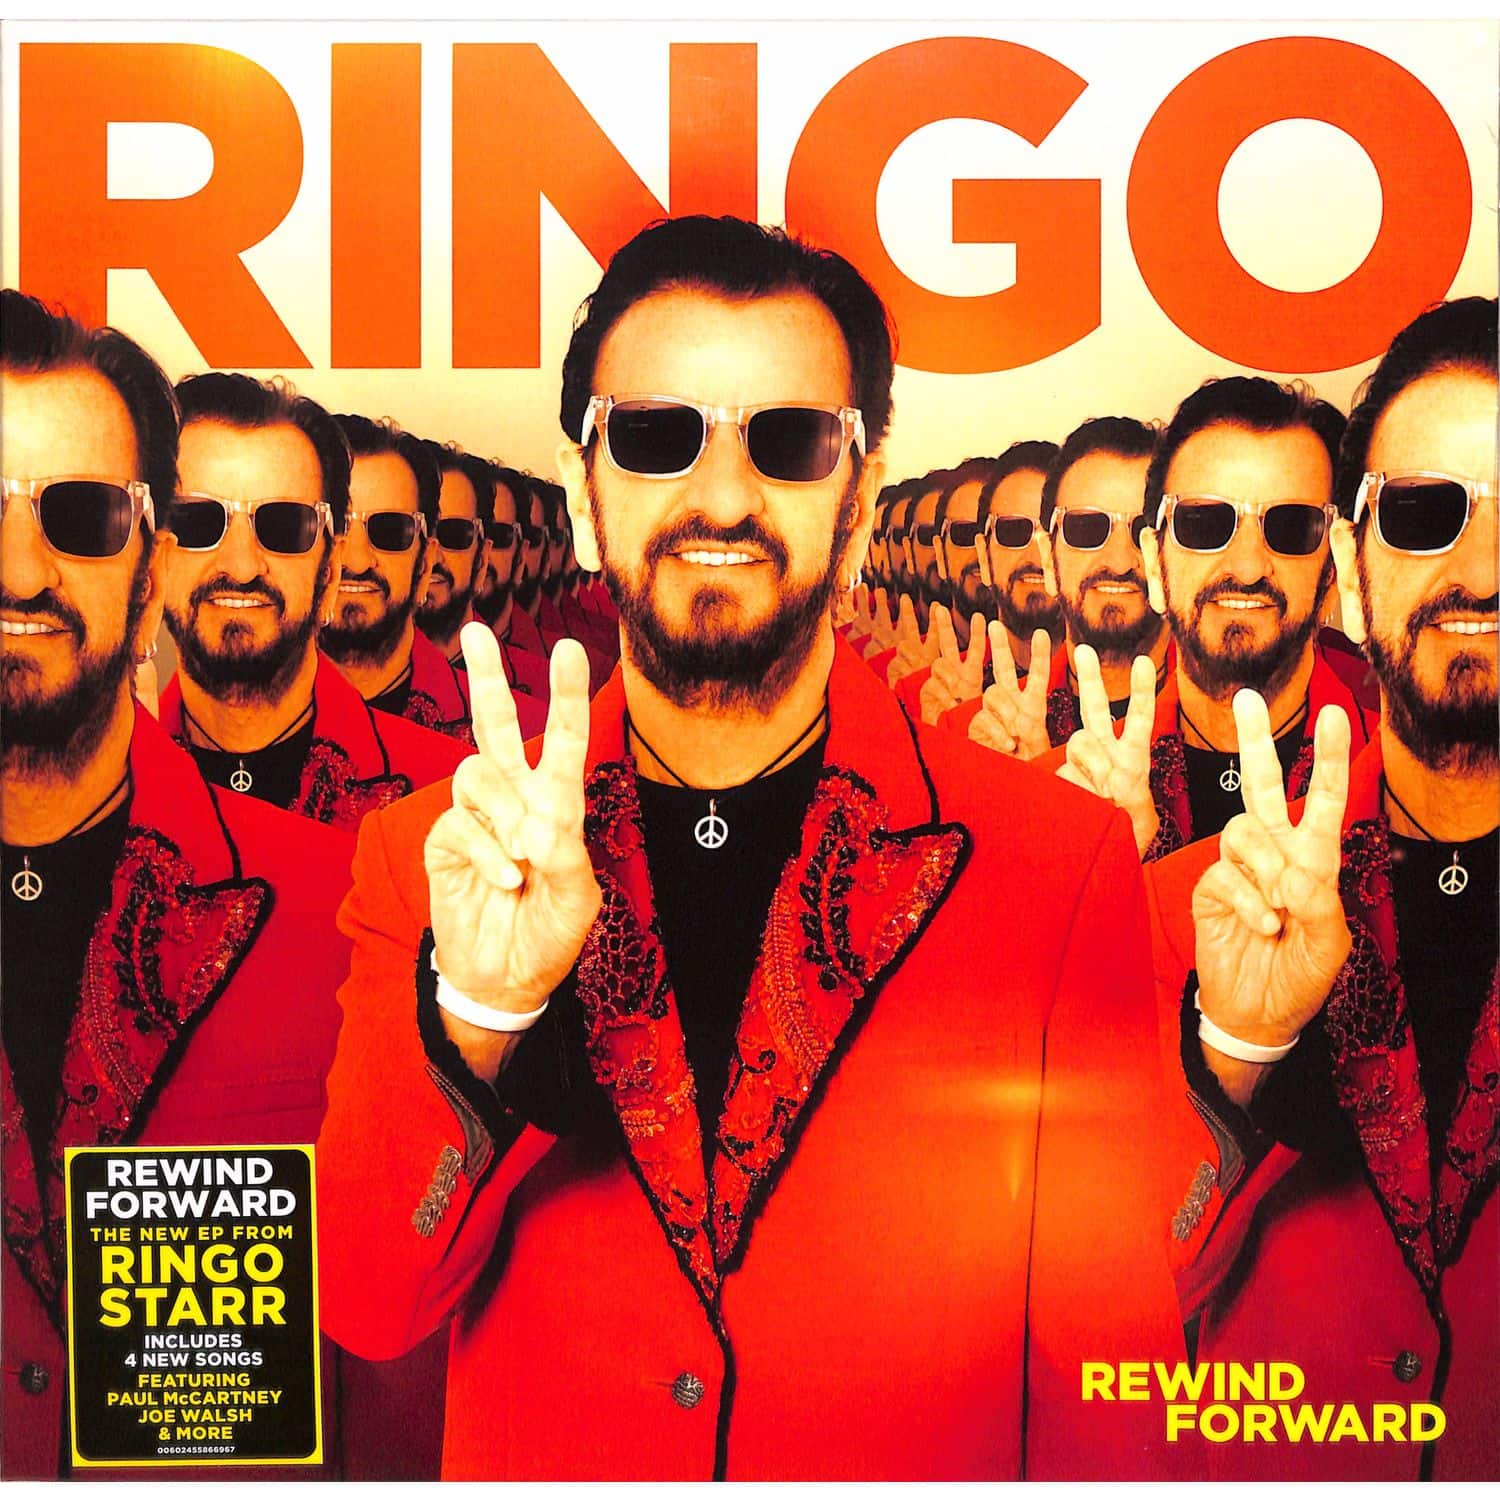 Ringo Starr - REWIND FORWARD 